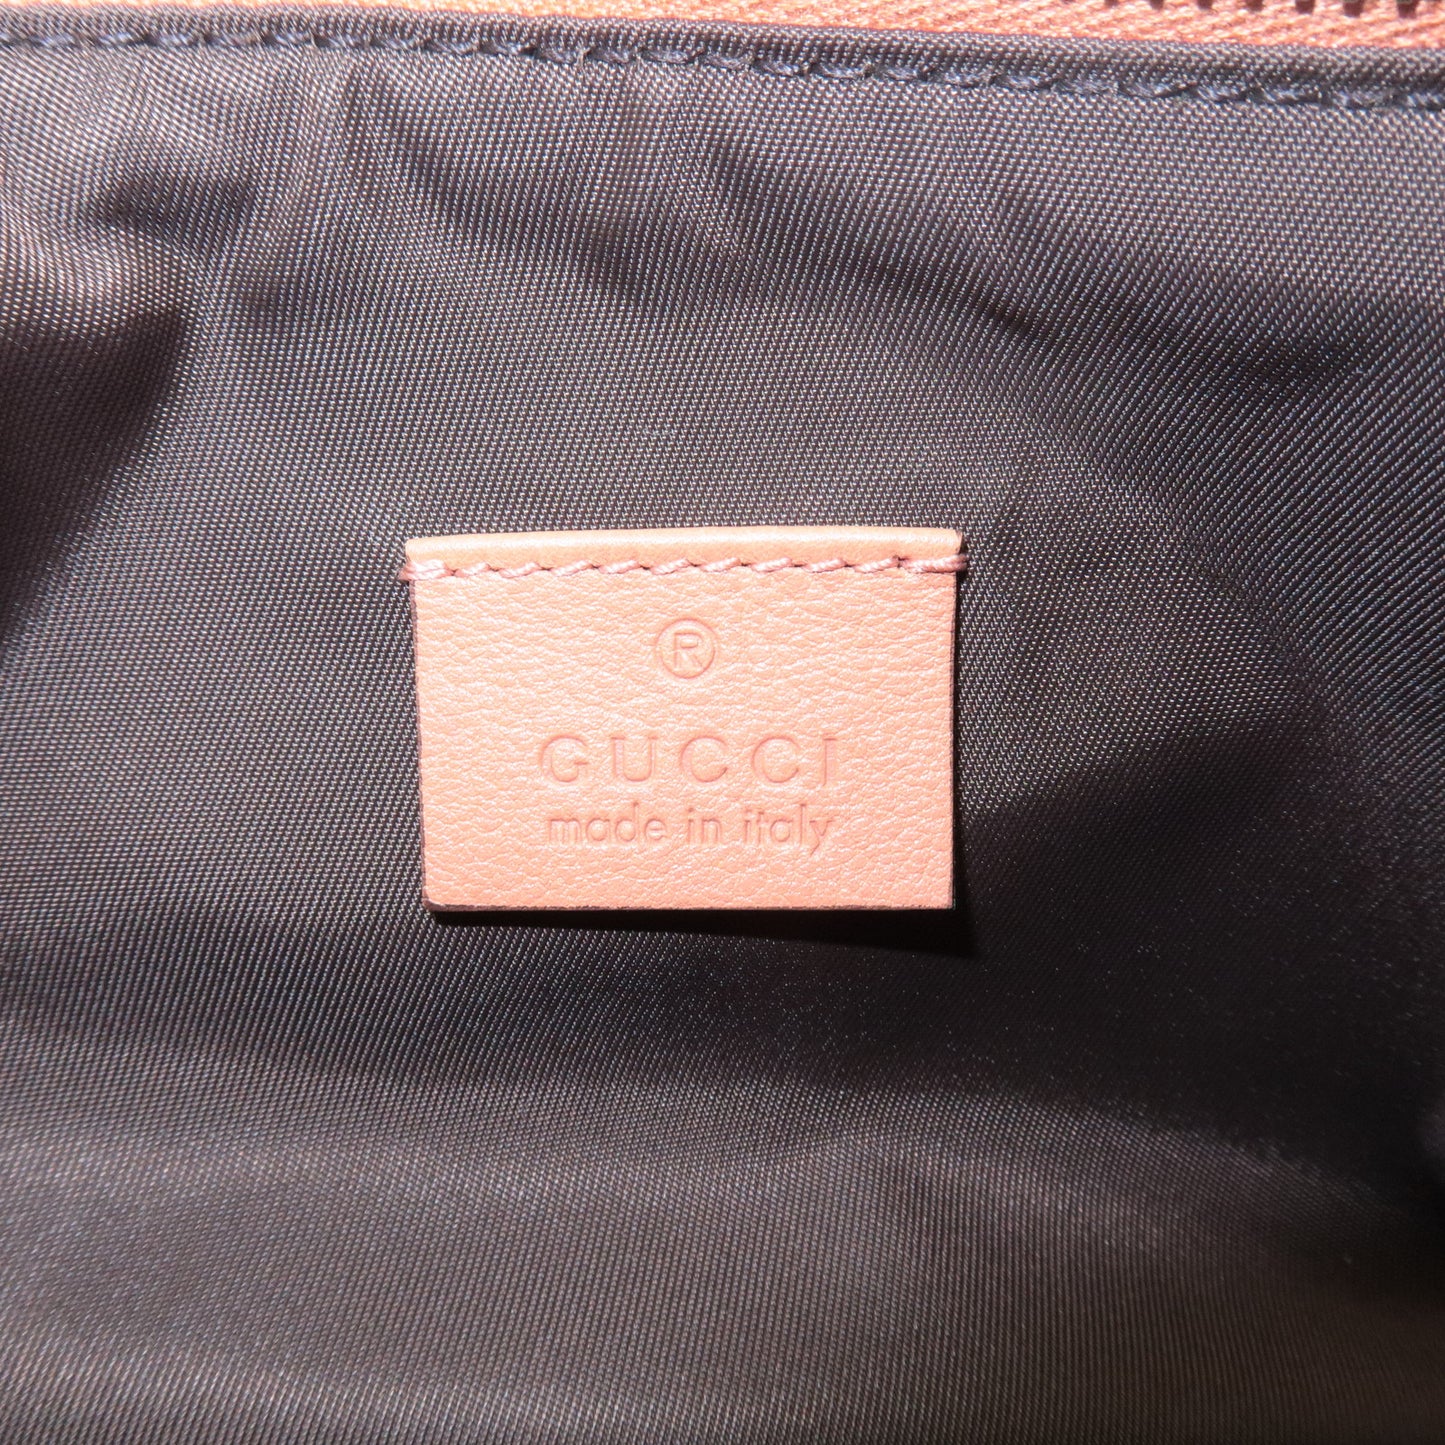 GUCCI GG Canvas Leather Shoulder Bag Hand Bag Beige 224093